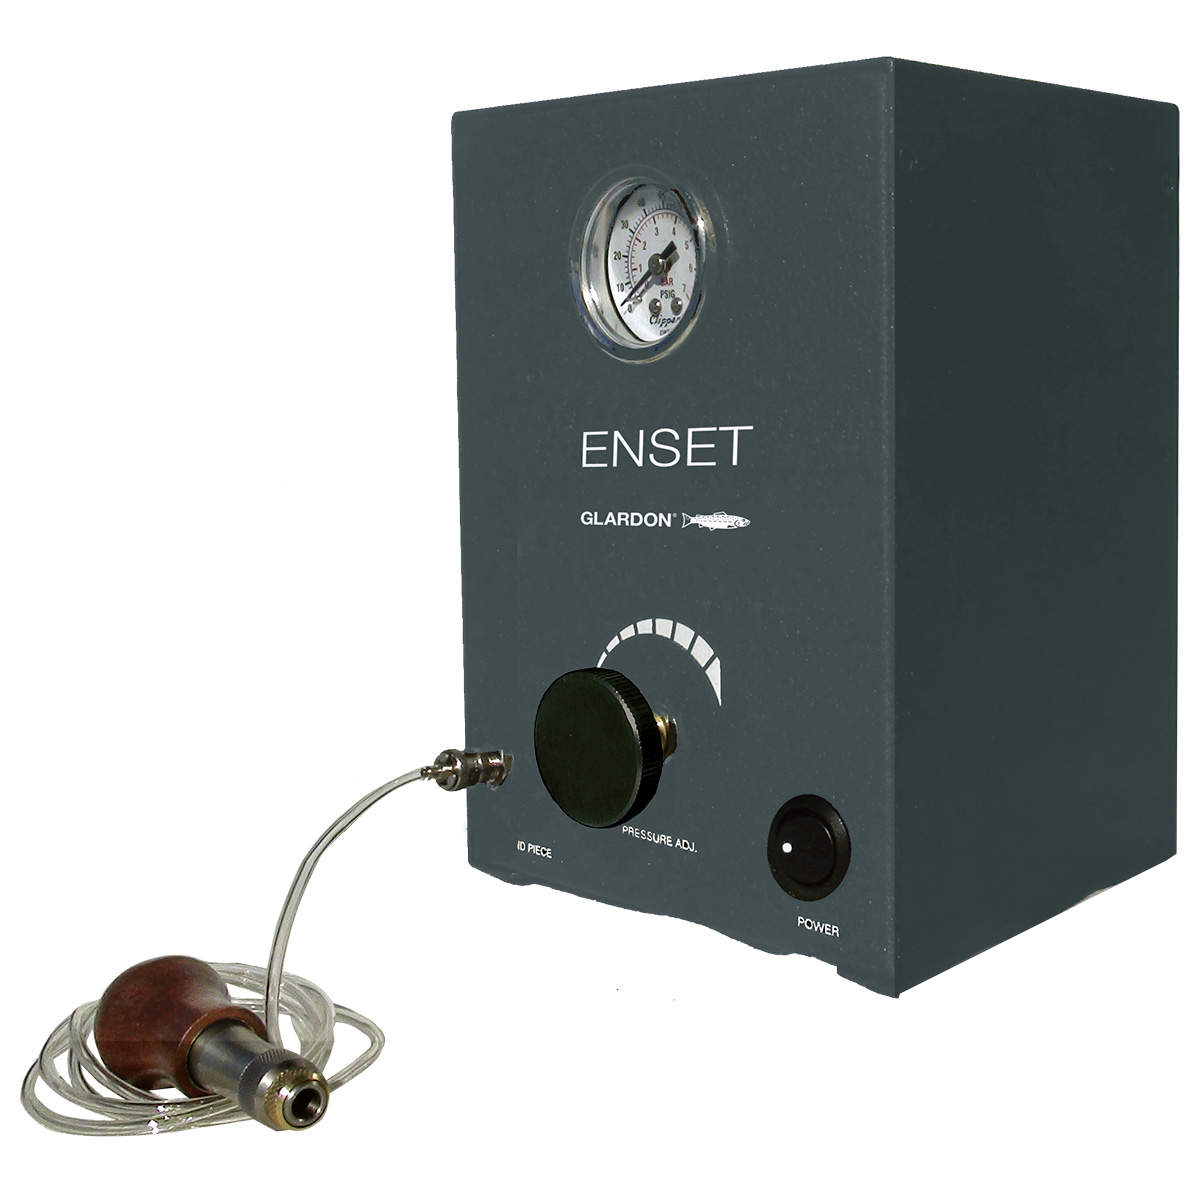 Tischsteuereinheit EnSet Compact mit Einzelanschluss, Analoganzeige, Frequenz bis 1500 Schläge/Min.
